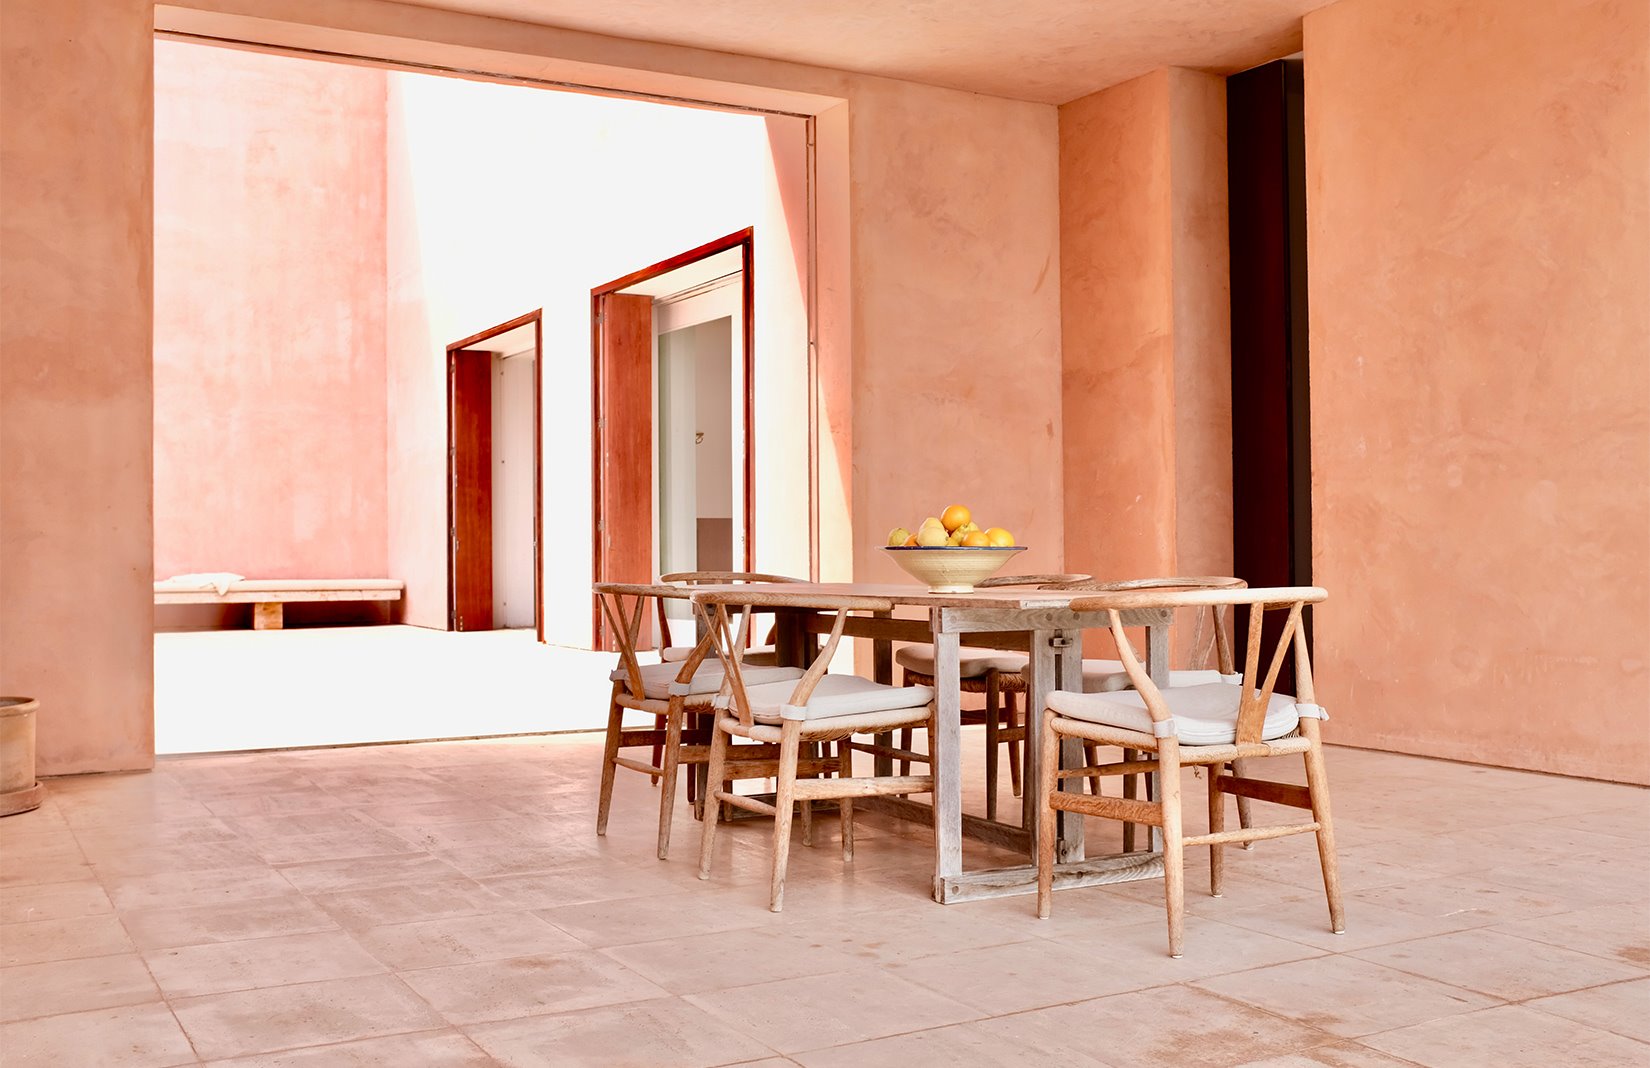 Casa de color rosa de claudio Silvestrin y John pawson en Mallorca comedor exterior